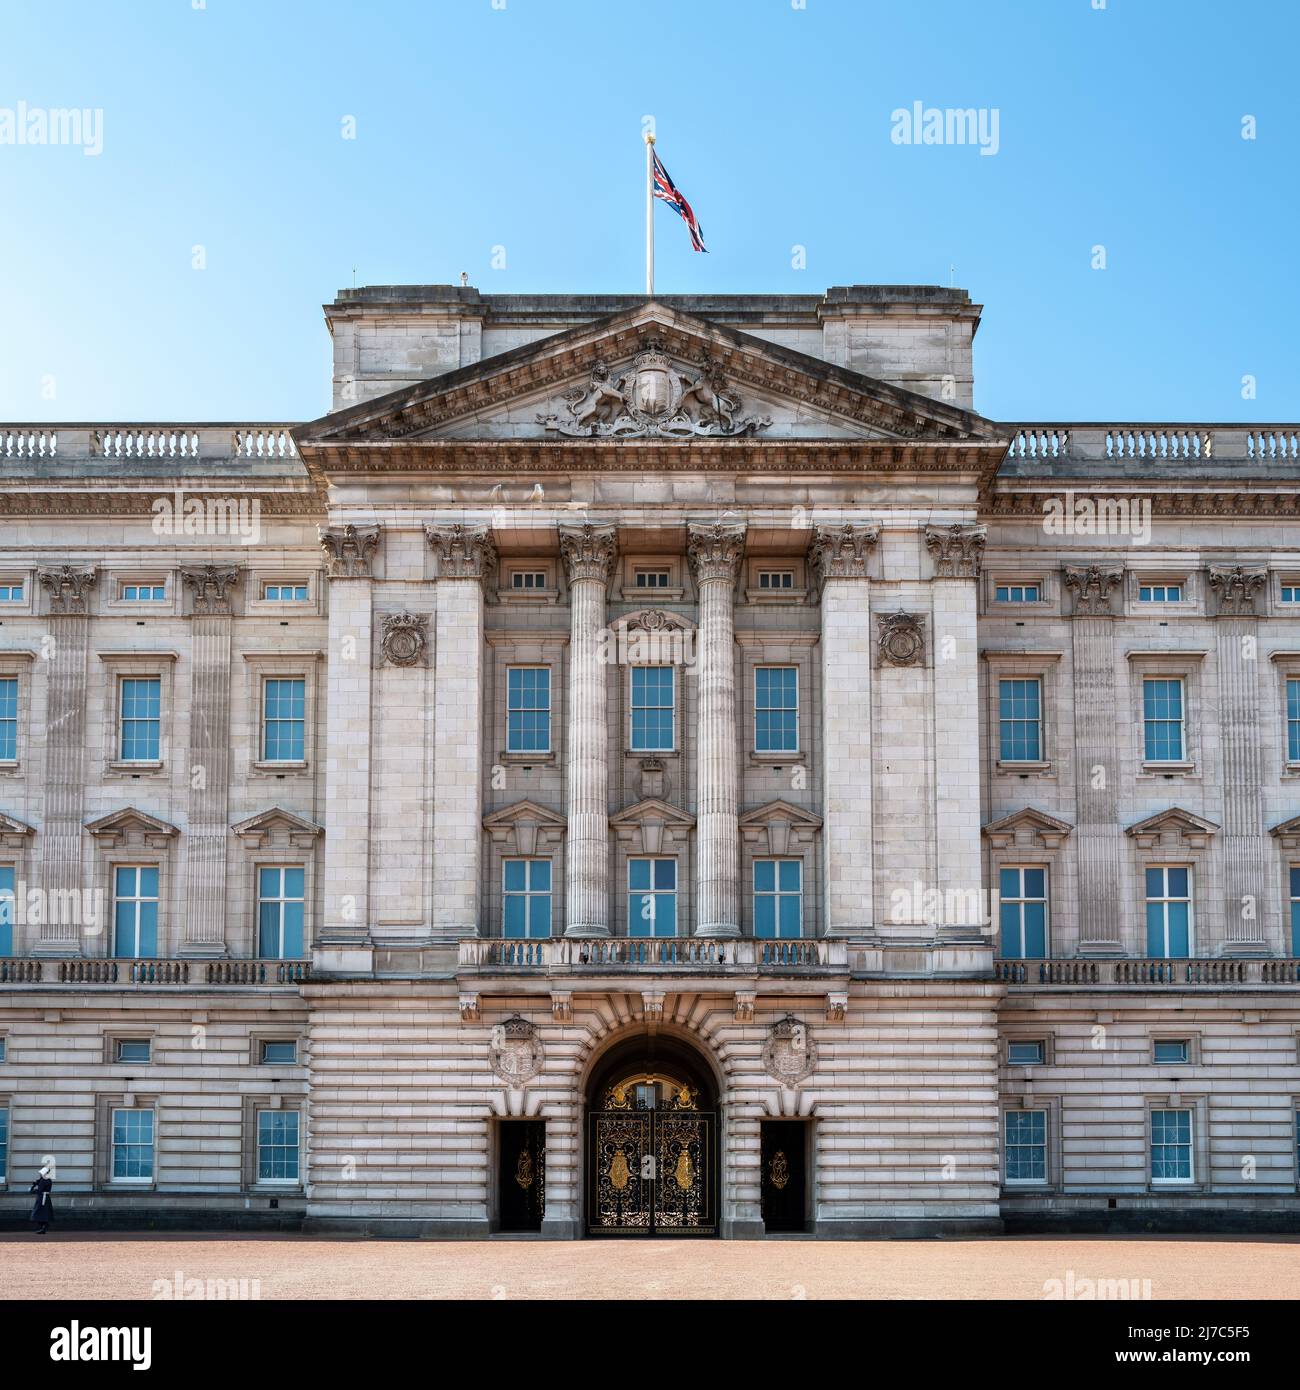 Londres, Reino Unido - 26 de marzo de 2022: El famoso balcón del Palacio de Buckingham, Londres, residencia de la Reina Isabel II Durante las celebraciones del Jubileo, el Real f Foto de stock